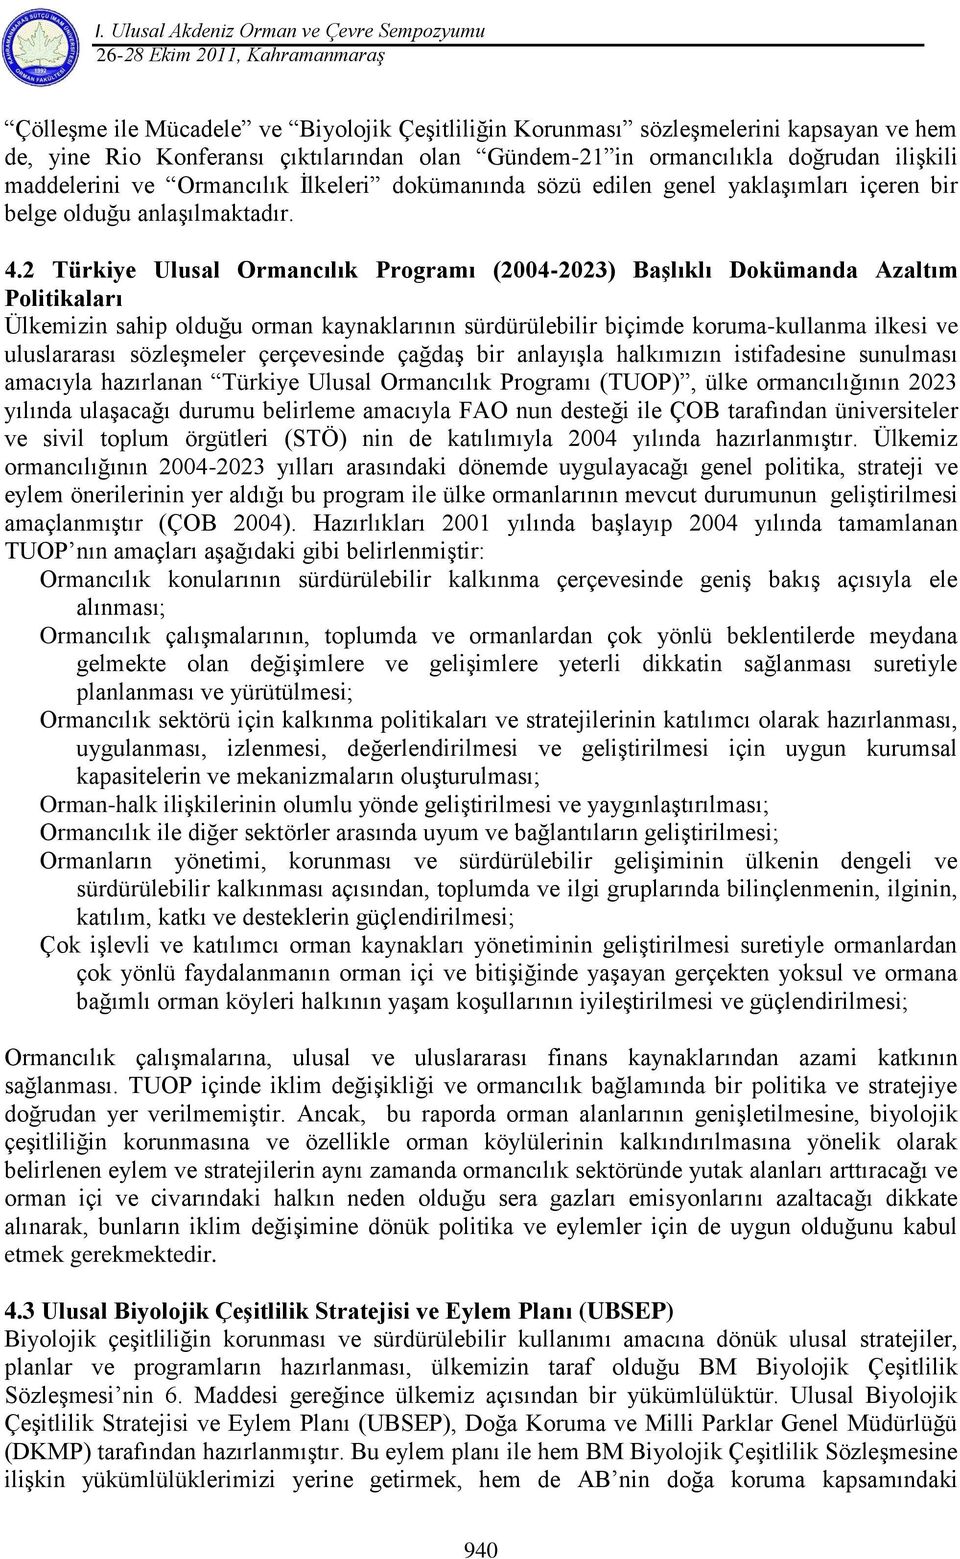 2 Türkiye Ulusal Ormancılık Programı (2004-2023) Başlıklı Dokümanda Azaltım Politikaları Ülkemizin sahip olduğu orman kaynaklarının sürdürülebilir biçimde koruma-kullanma ilkesi ve uluslararası